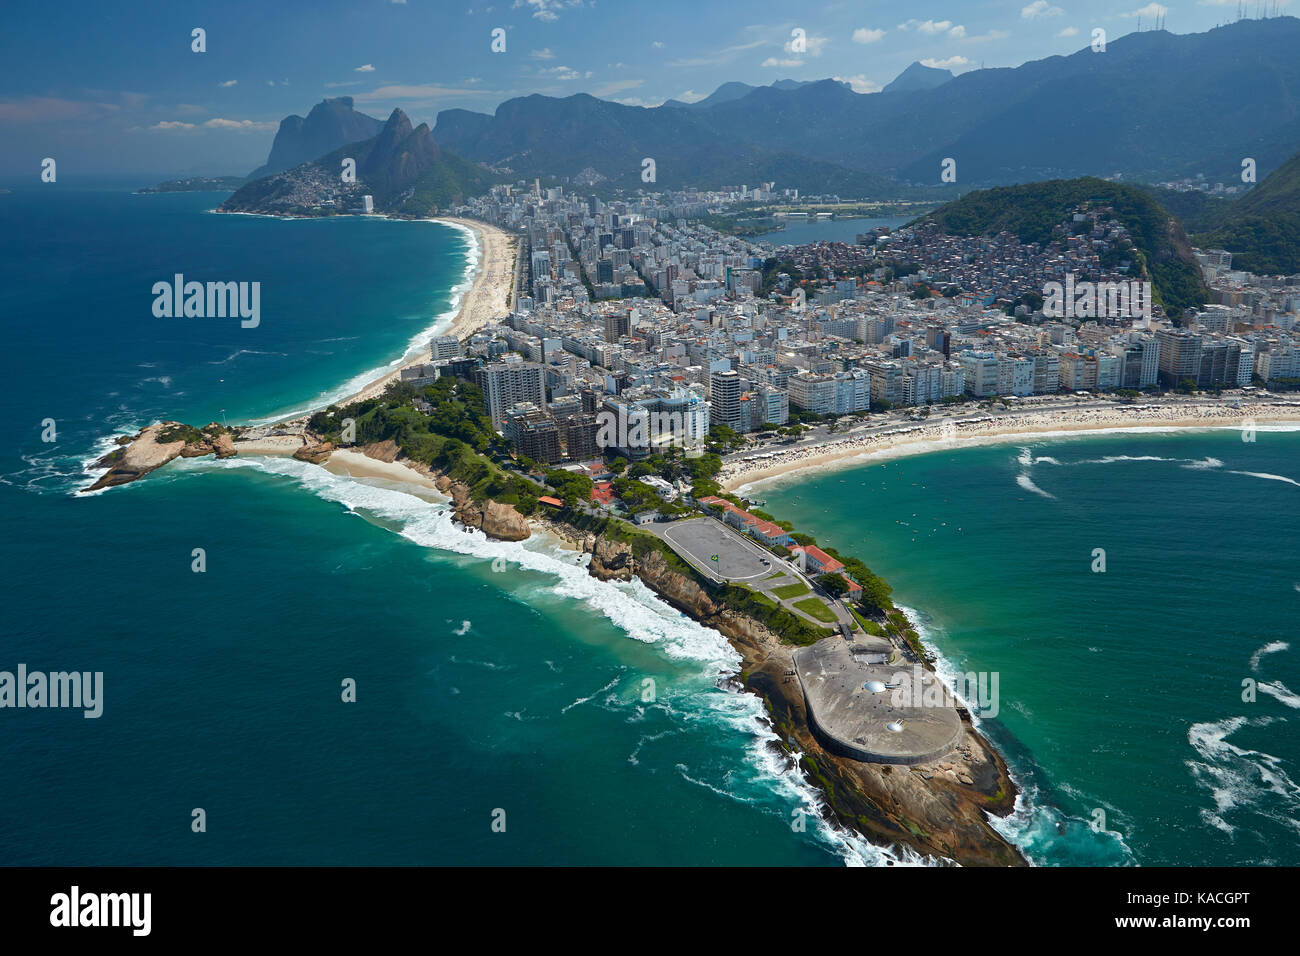 Fort de Copacabana, Ipanema beach (en haut à gauche), et la plage de Copacabana (droite), Rio de Janeiro, Brésil, Amérique du sud - vue aérienne Banque D'Images